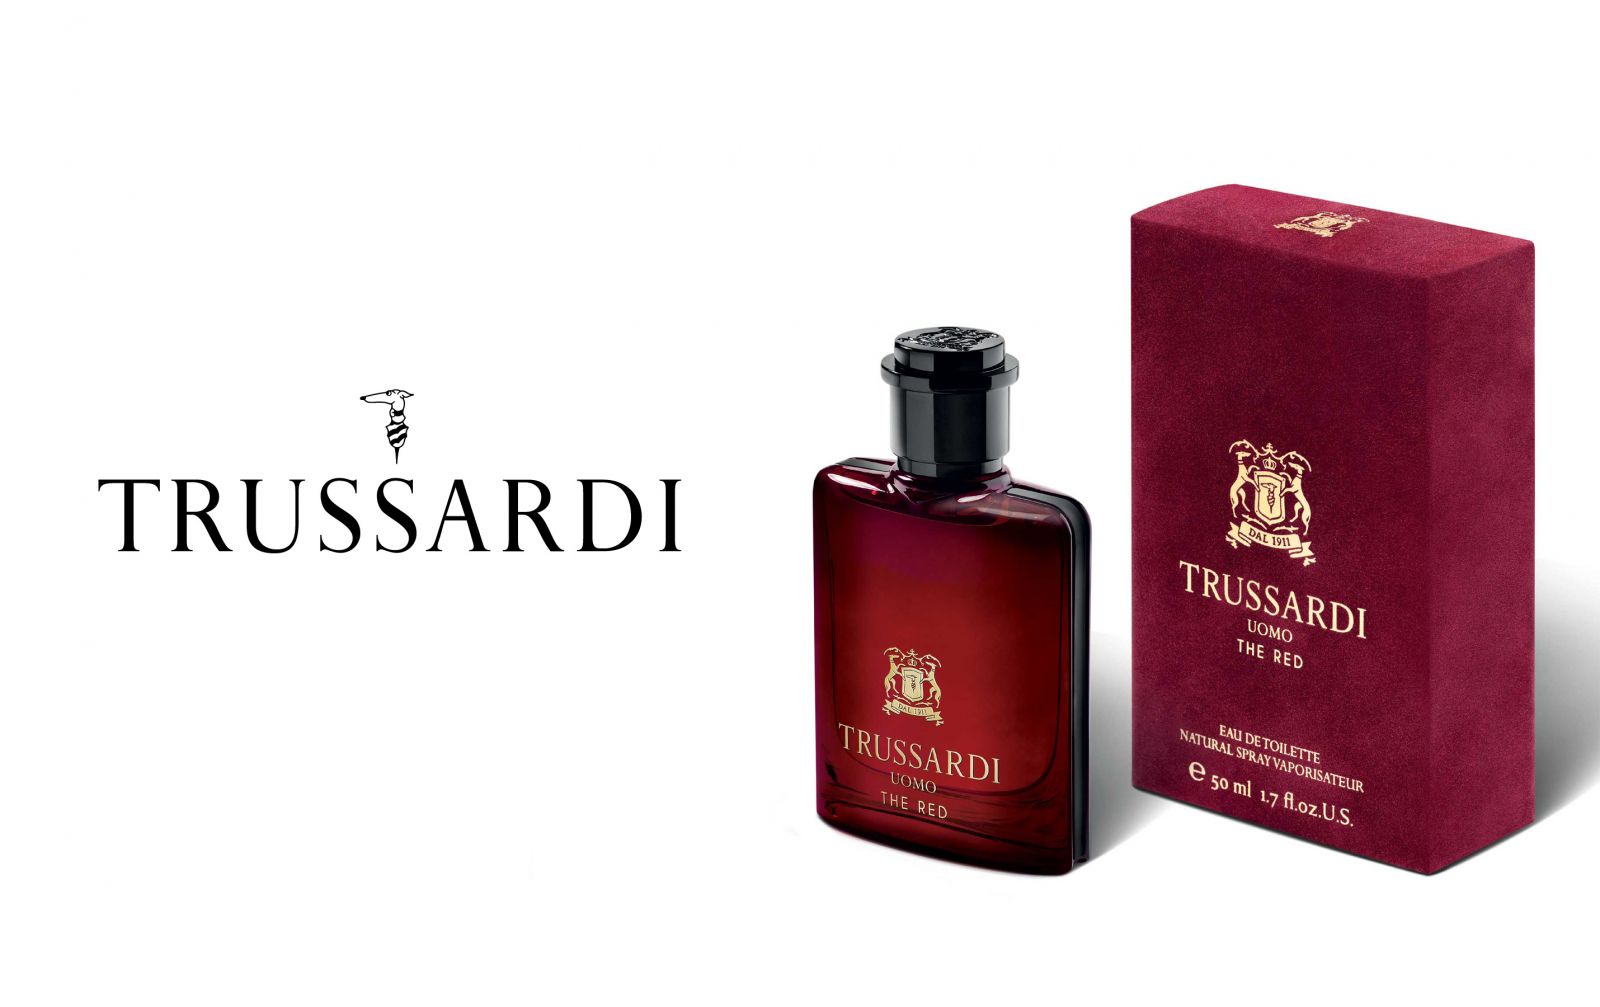 Страстный красный: Trussardi представили новый мужской аромат Uomo The Red Trussardi аромат, Uomo The Red